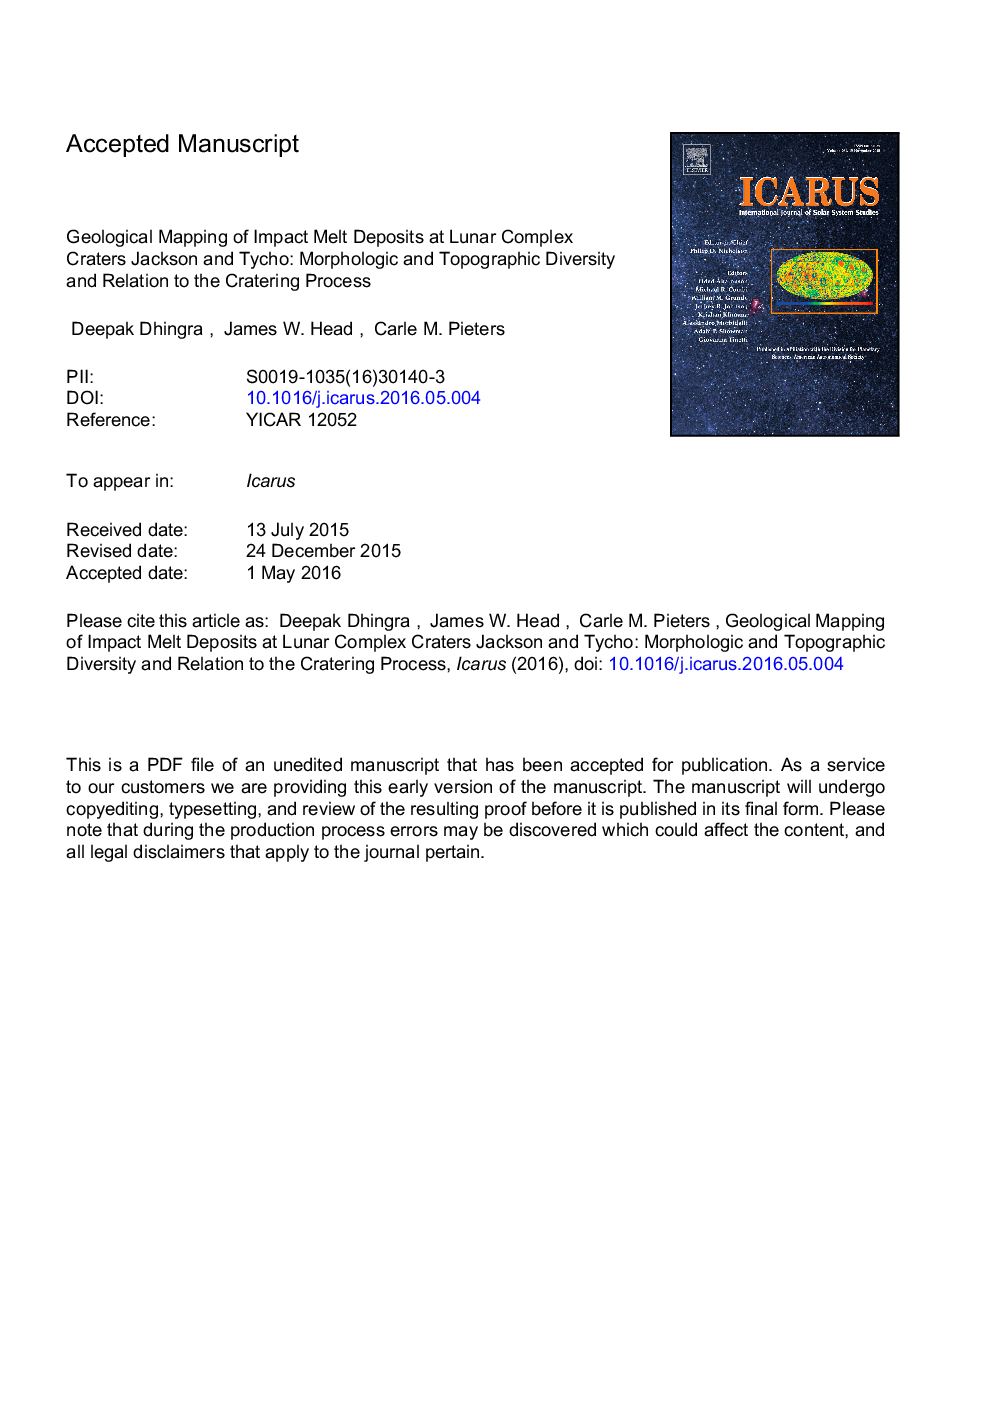 نقشه برداری زمین شناسی رسوبات ذوب در گودال های مجتمع قمر جکسون و تیچو: تنوع مورفولوژیکی و توپوگرافی و رابطه آن با فرایند کاترینگ 